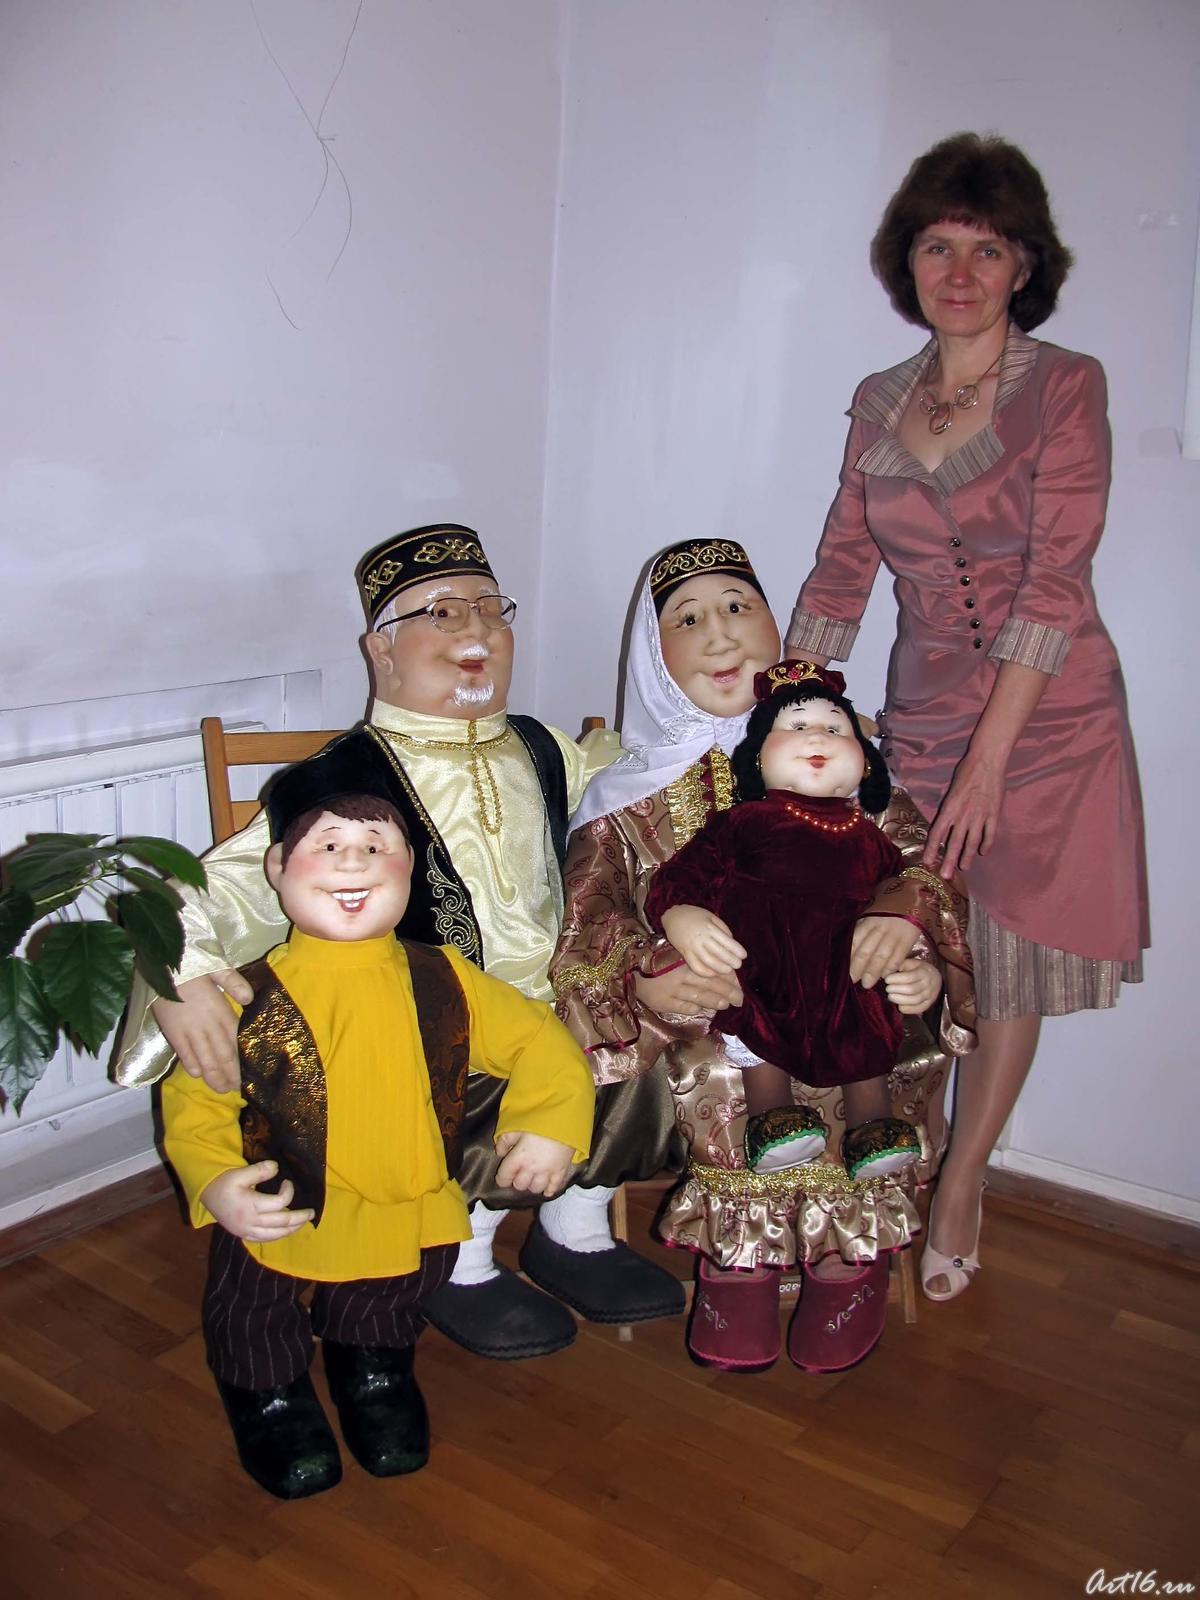 Фото №57643. Татарская семья ( кукольная композиция)